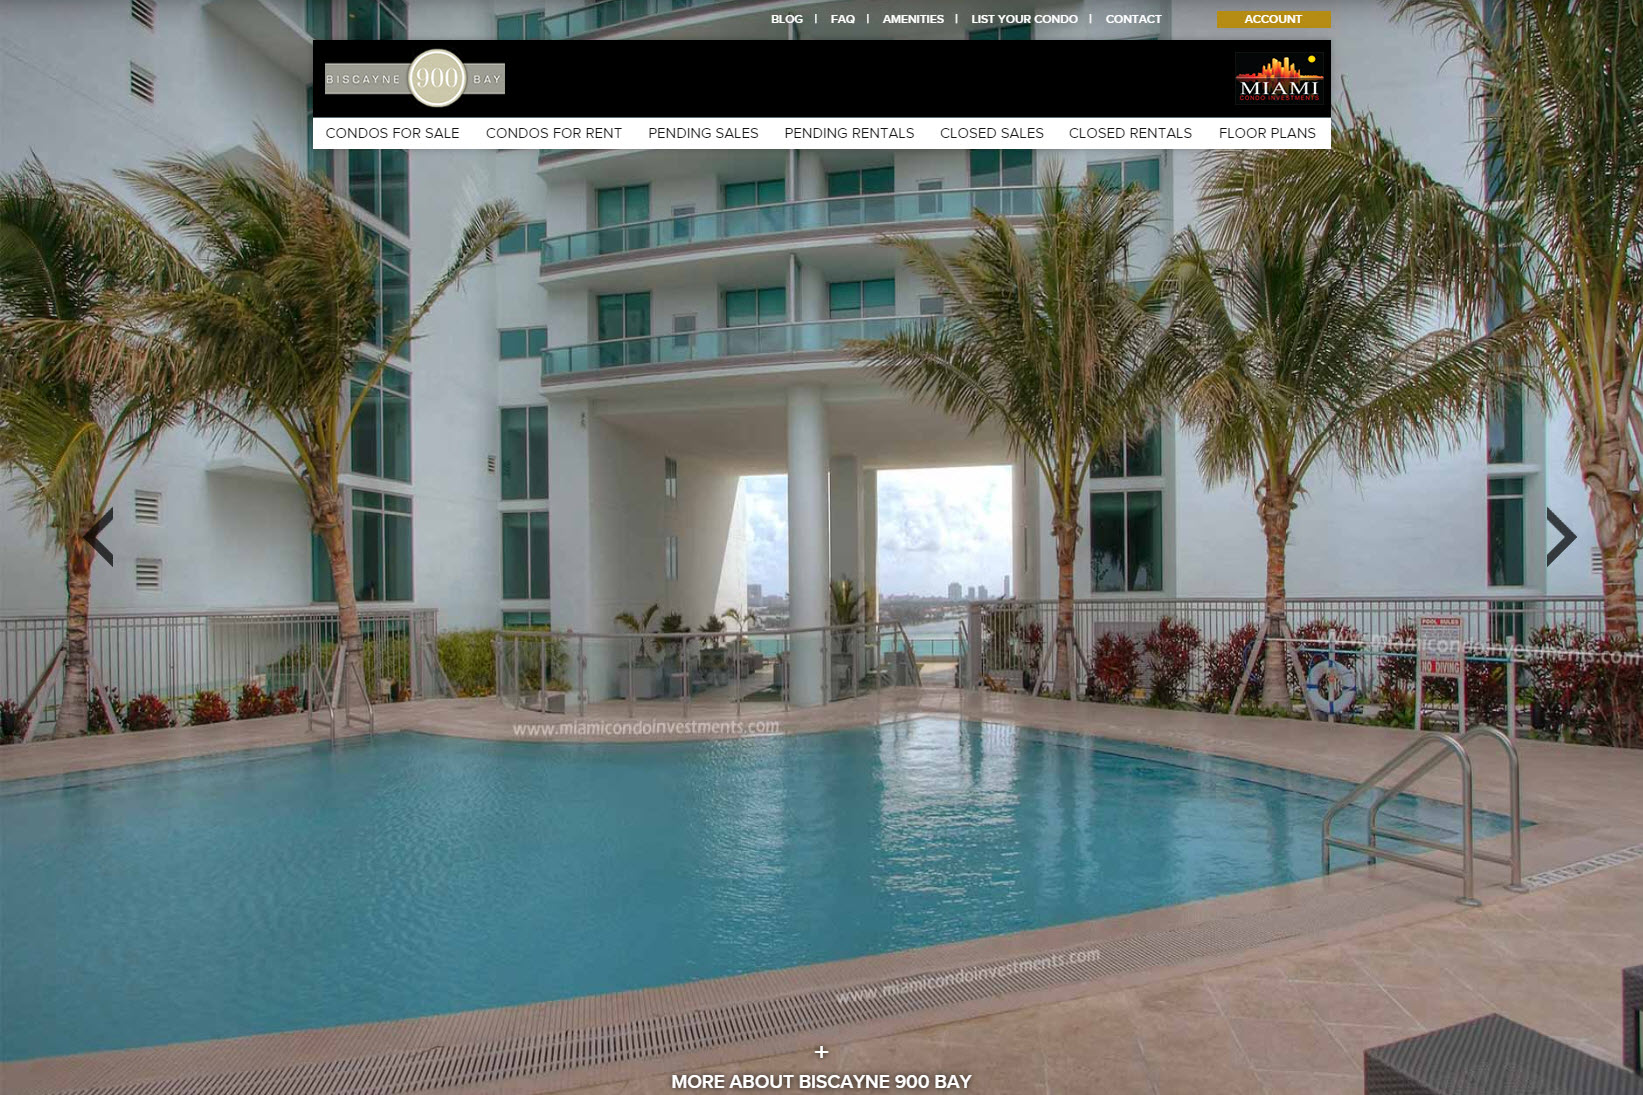 900 Biscayne Bay condo sales and rentals website